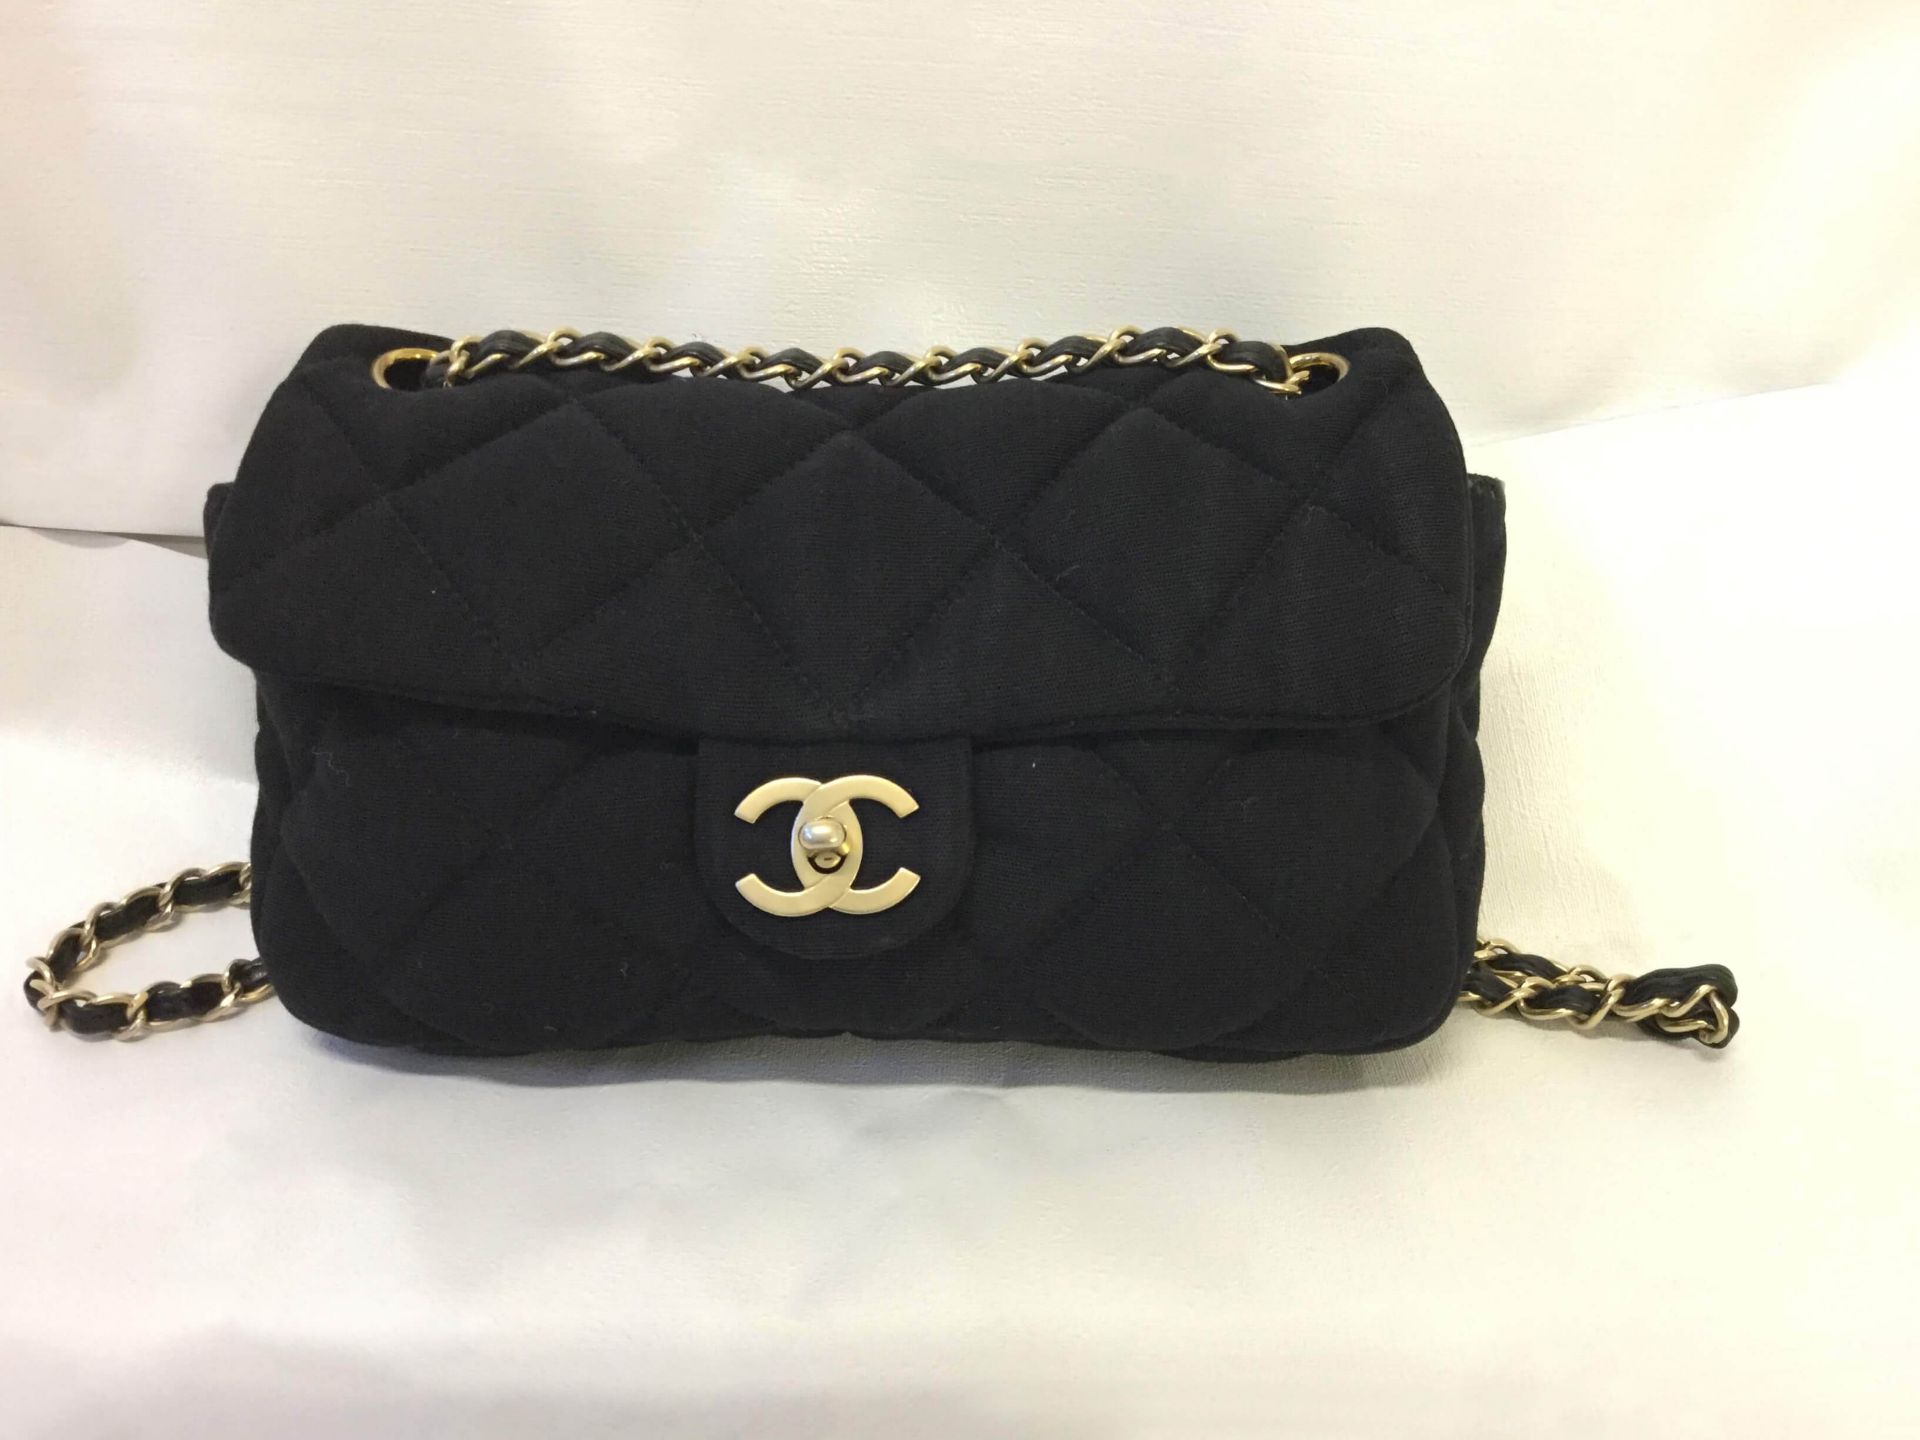 Chanel 2.55 Jersey Black Vintage Shoulder Bag - Image 2 of 5